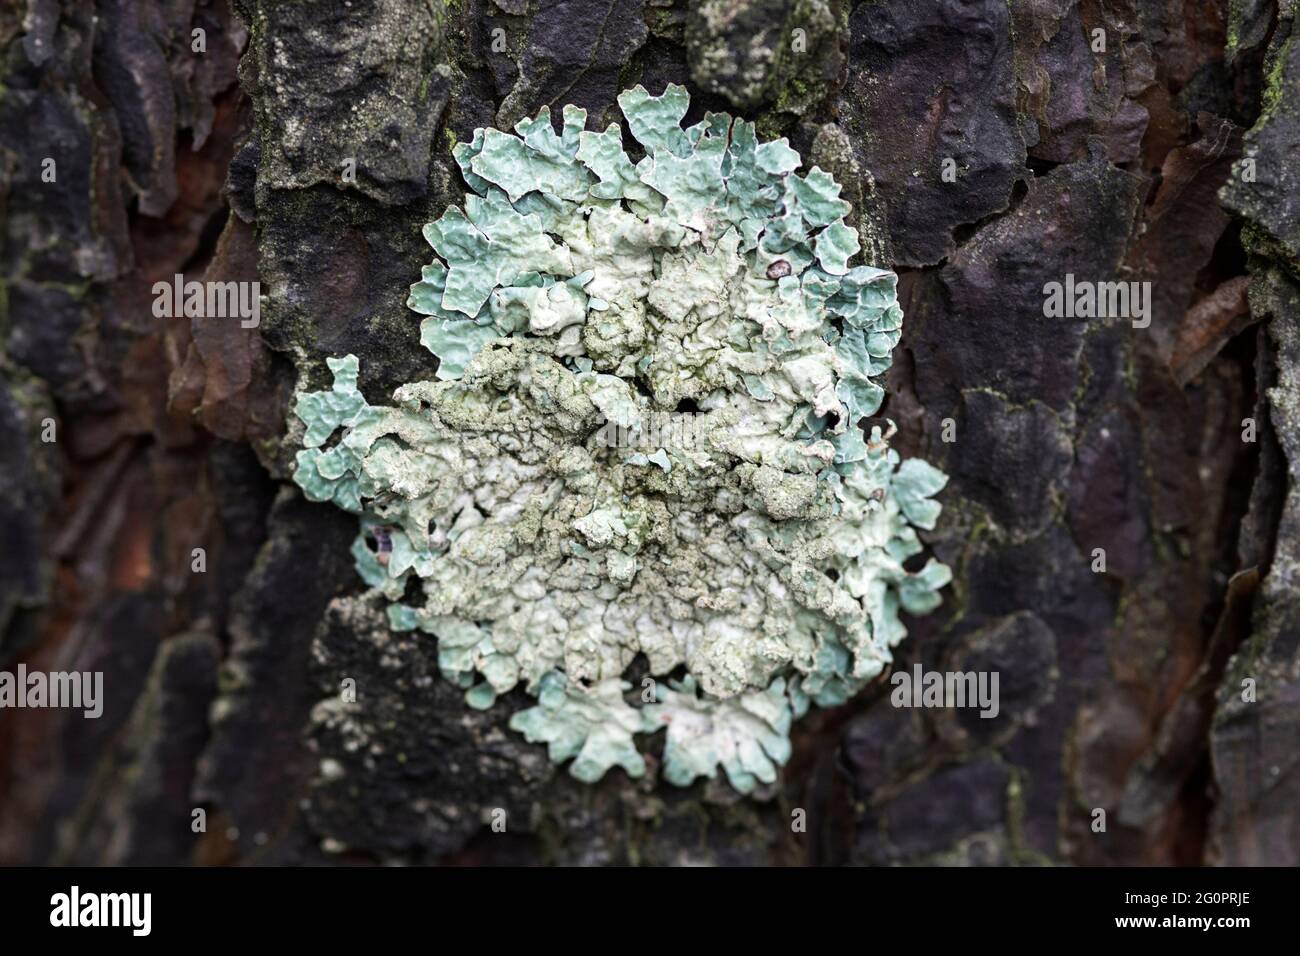 Lichen Flavoparmelia caperata on pine bark, macro Stock Photo